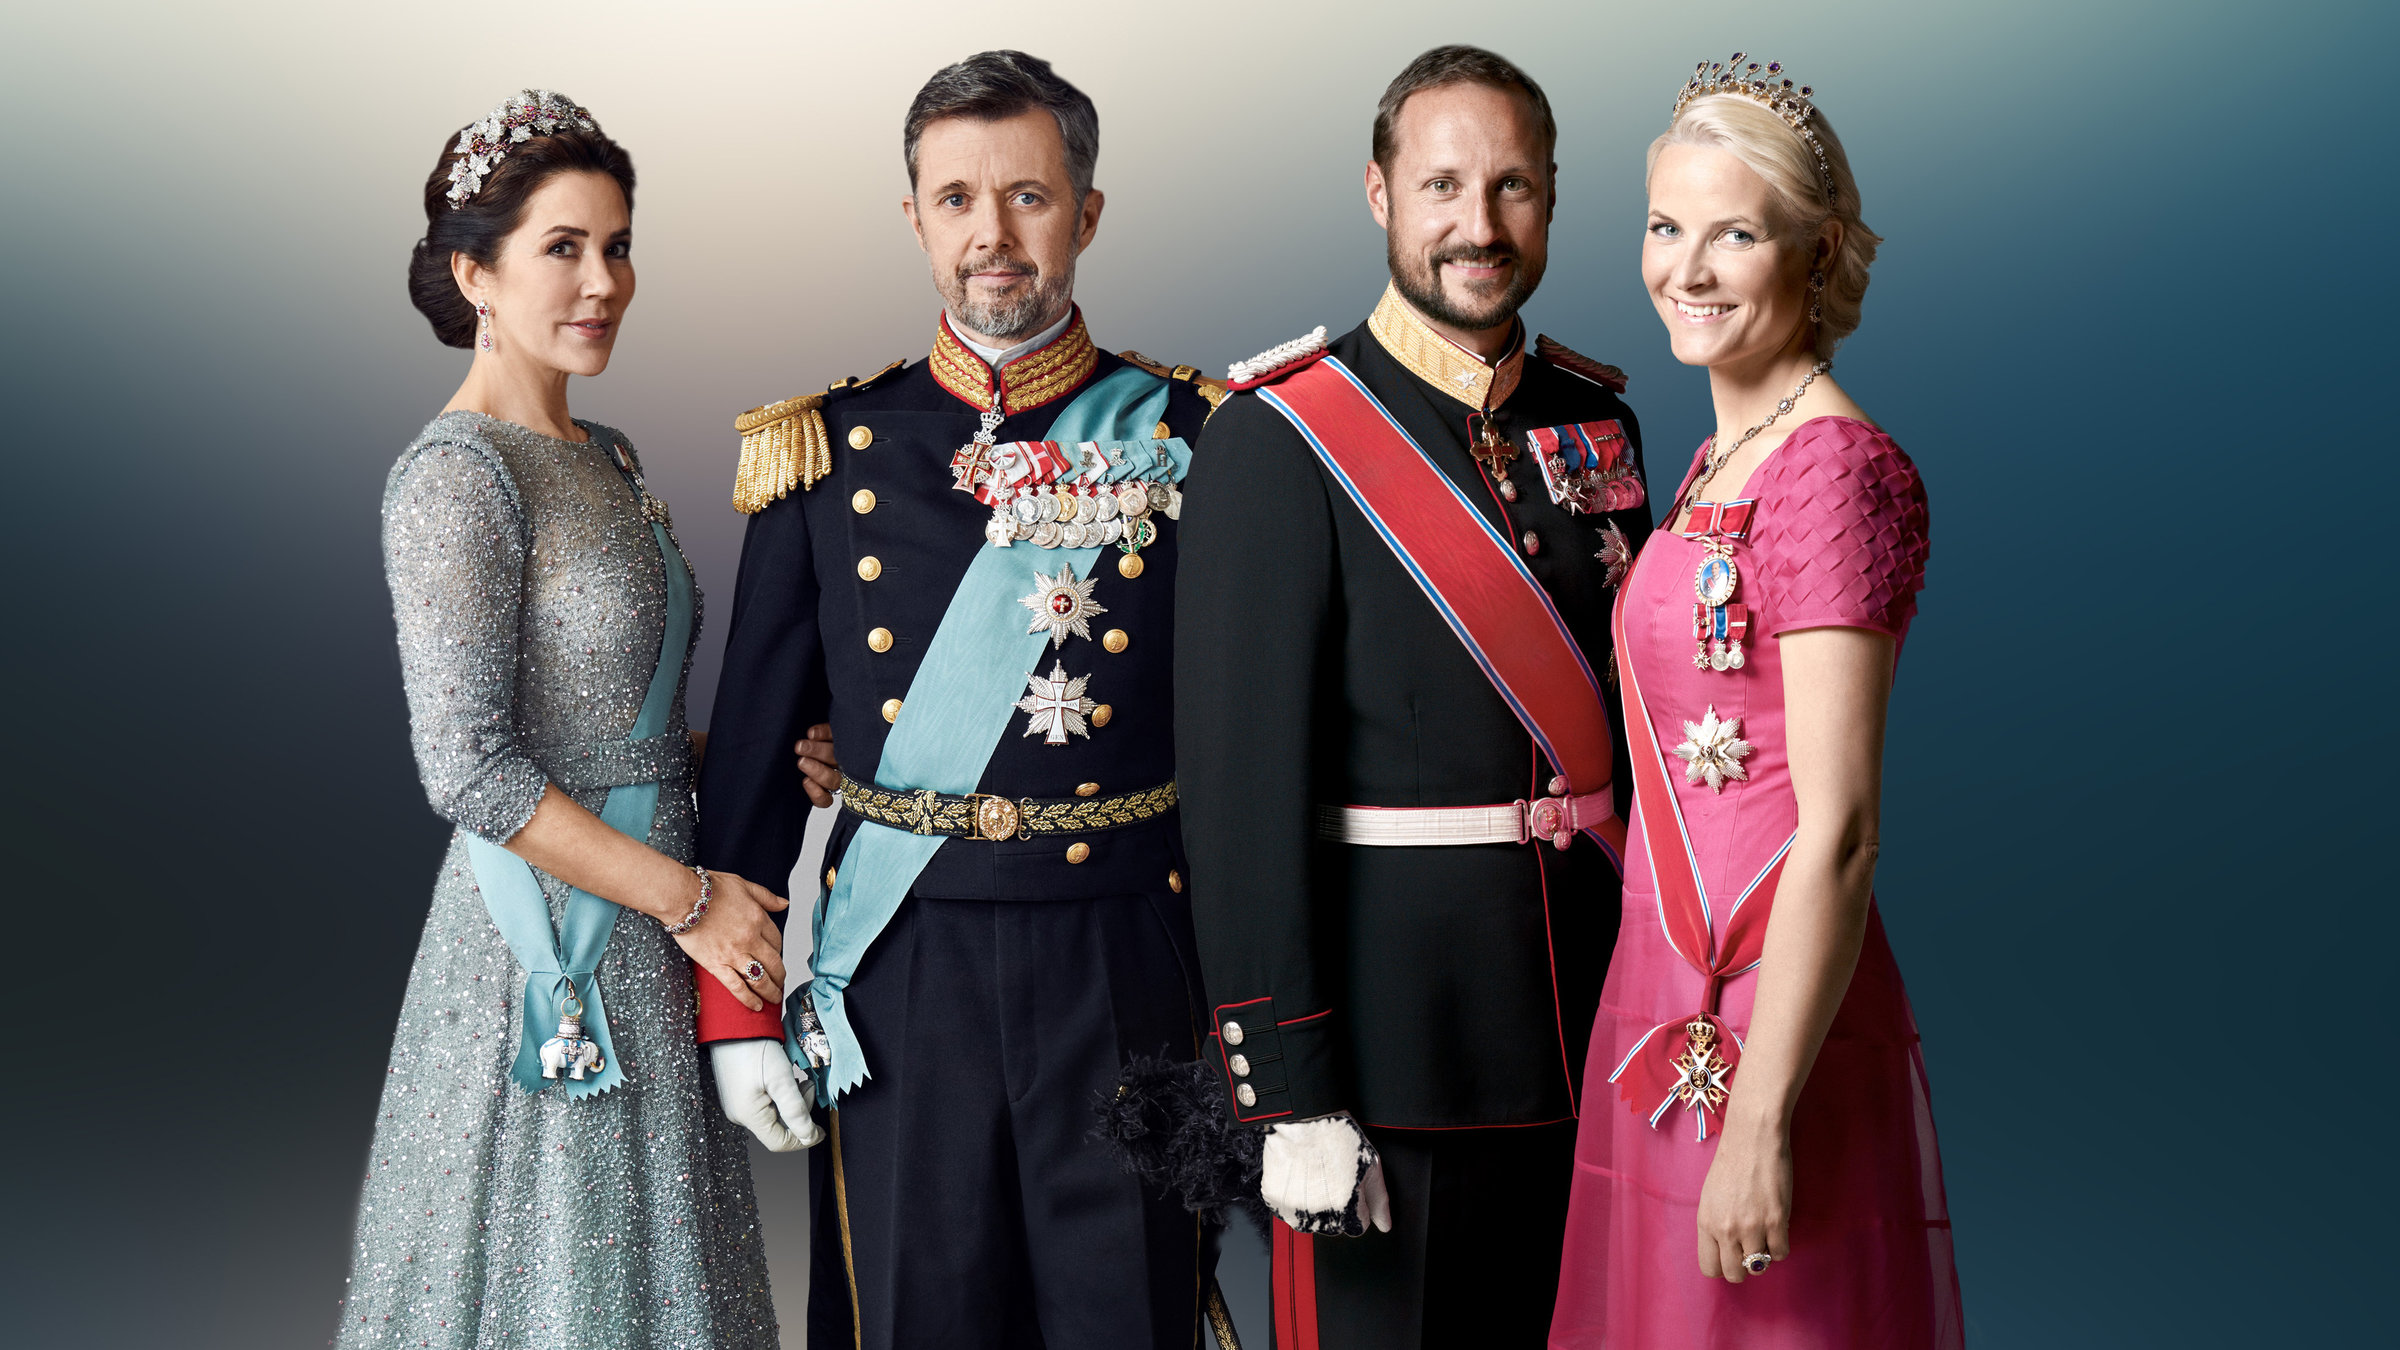 "ZDFroyal: Mein Mann, der Kronprinz - Die Thronfolger in Norwegen und Dänemark": Das dänische Kronprinzenpaar Mary und Frederik von Dänemark steht neben dem norwegischen Kronprinzenpaar Haakon und Mette-Marit.